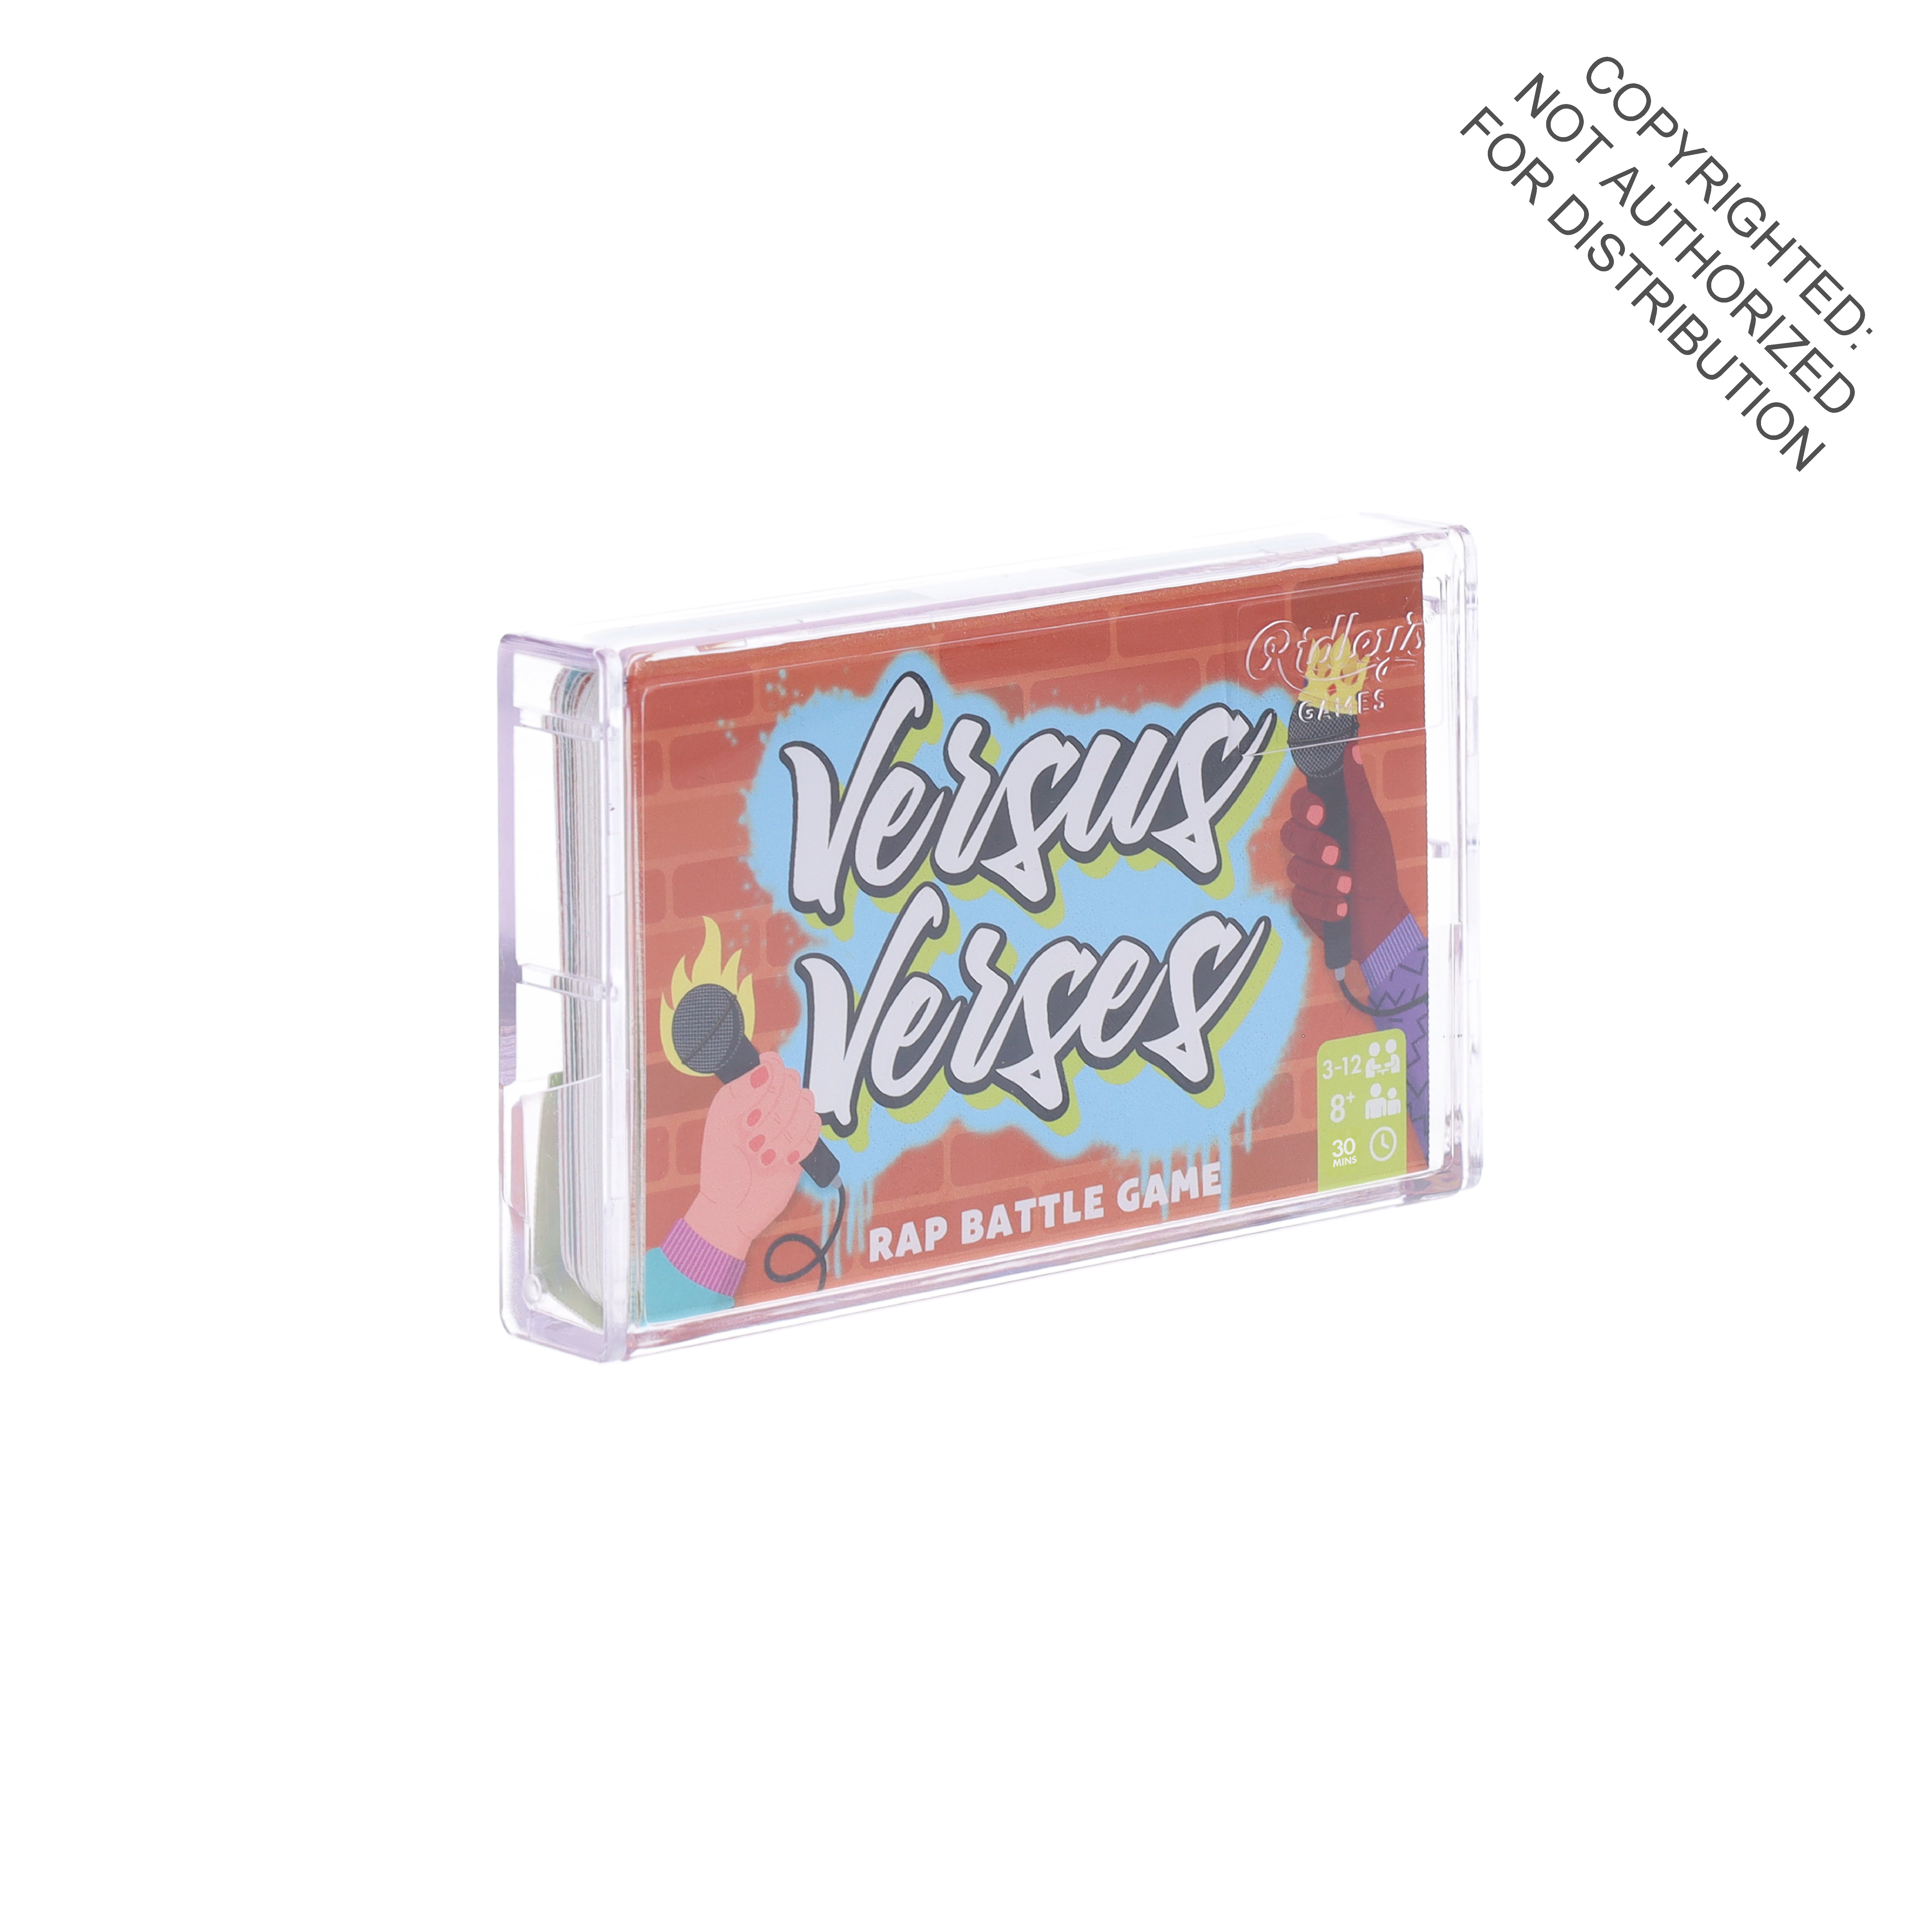 Versus Verses cassette game CDU of 6